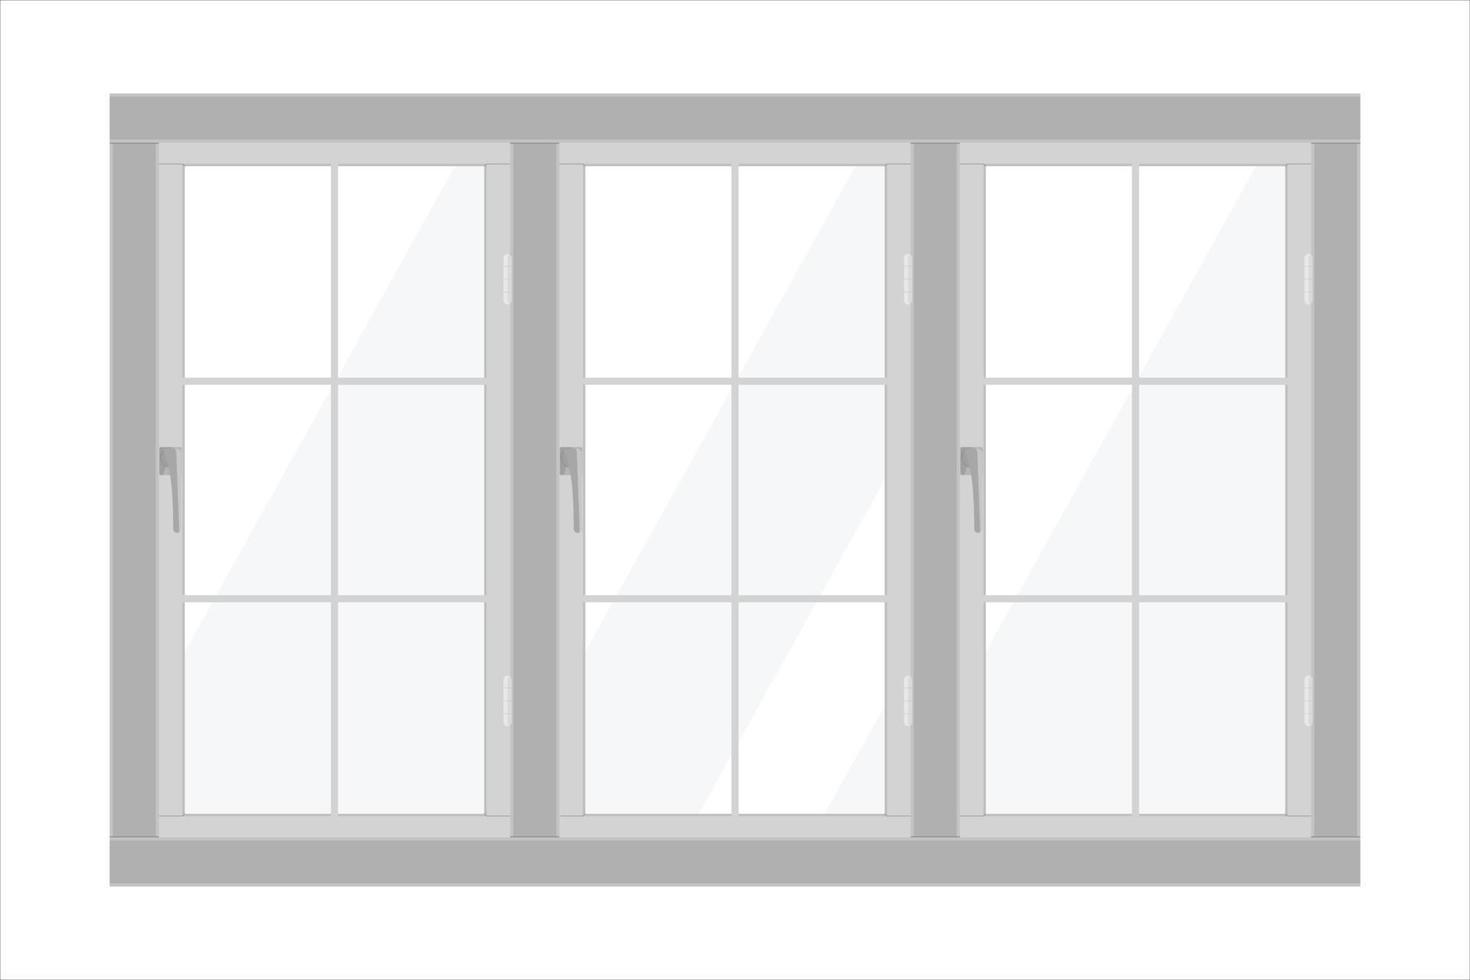 cadre de fenêtre blanc isolé sur fond blanc vecteur